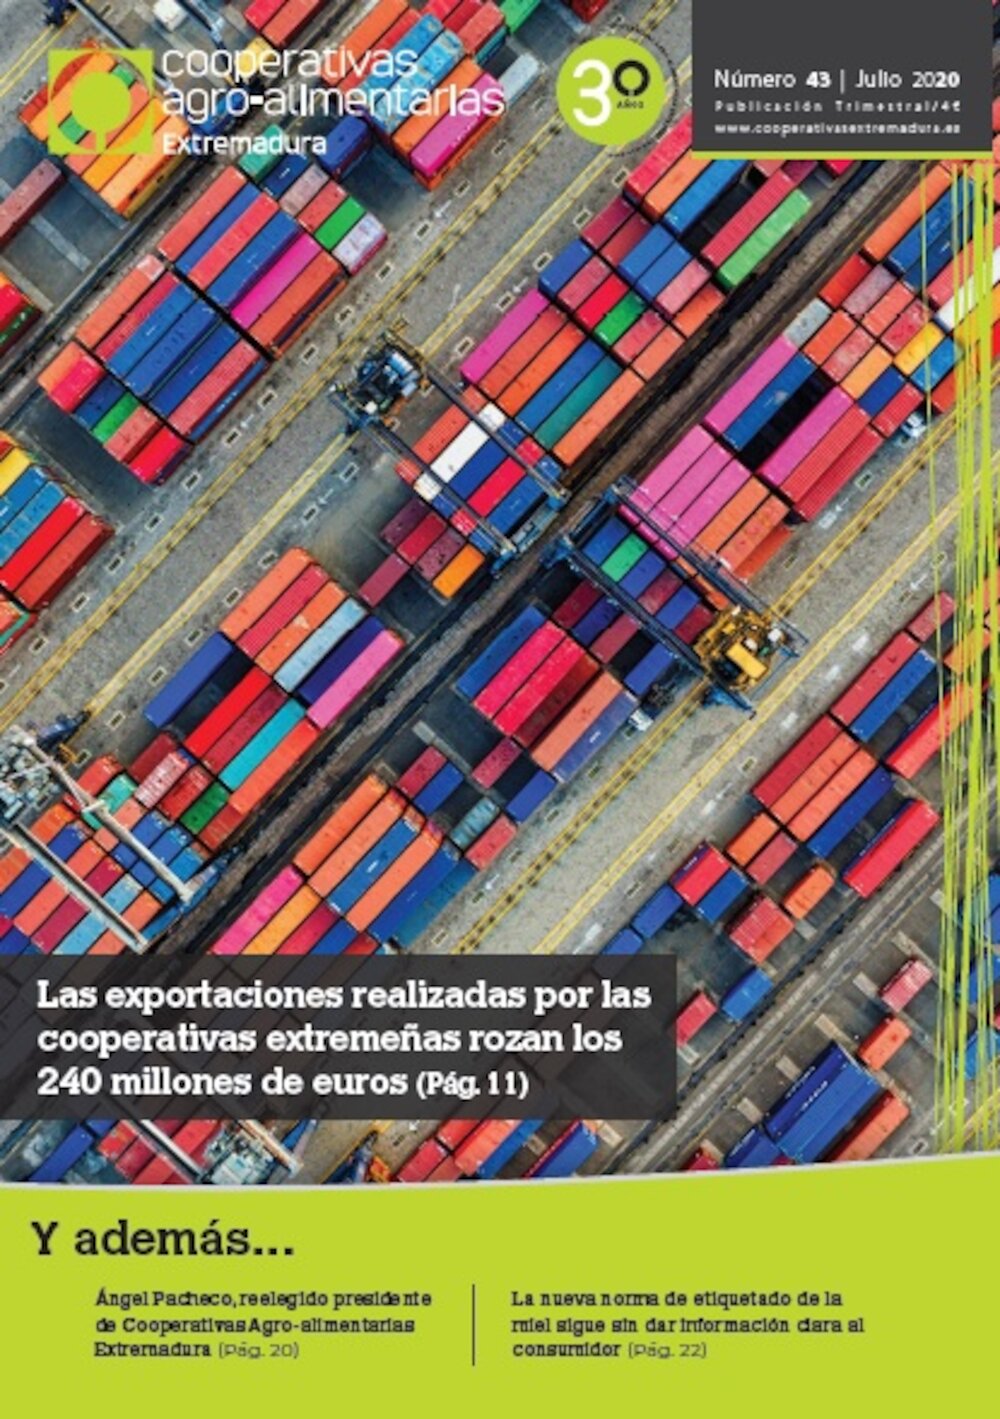 Disponible el último número de la revista Cooperativas Agro-alimentarias Extremadura